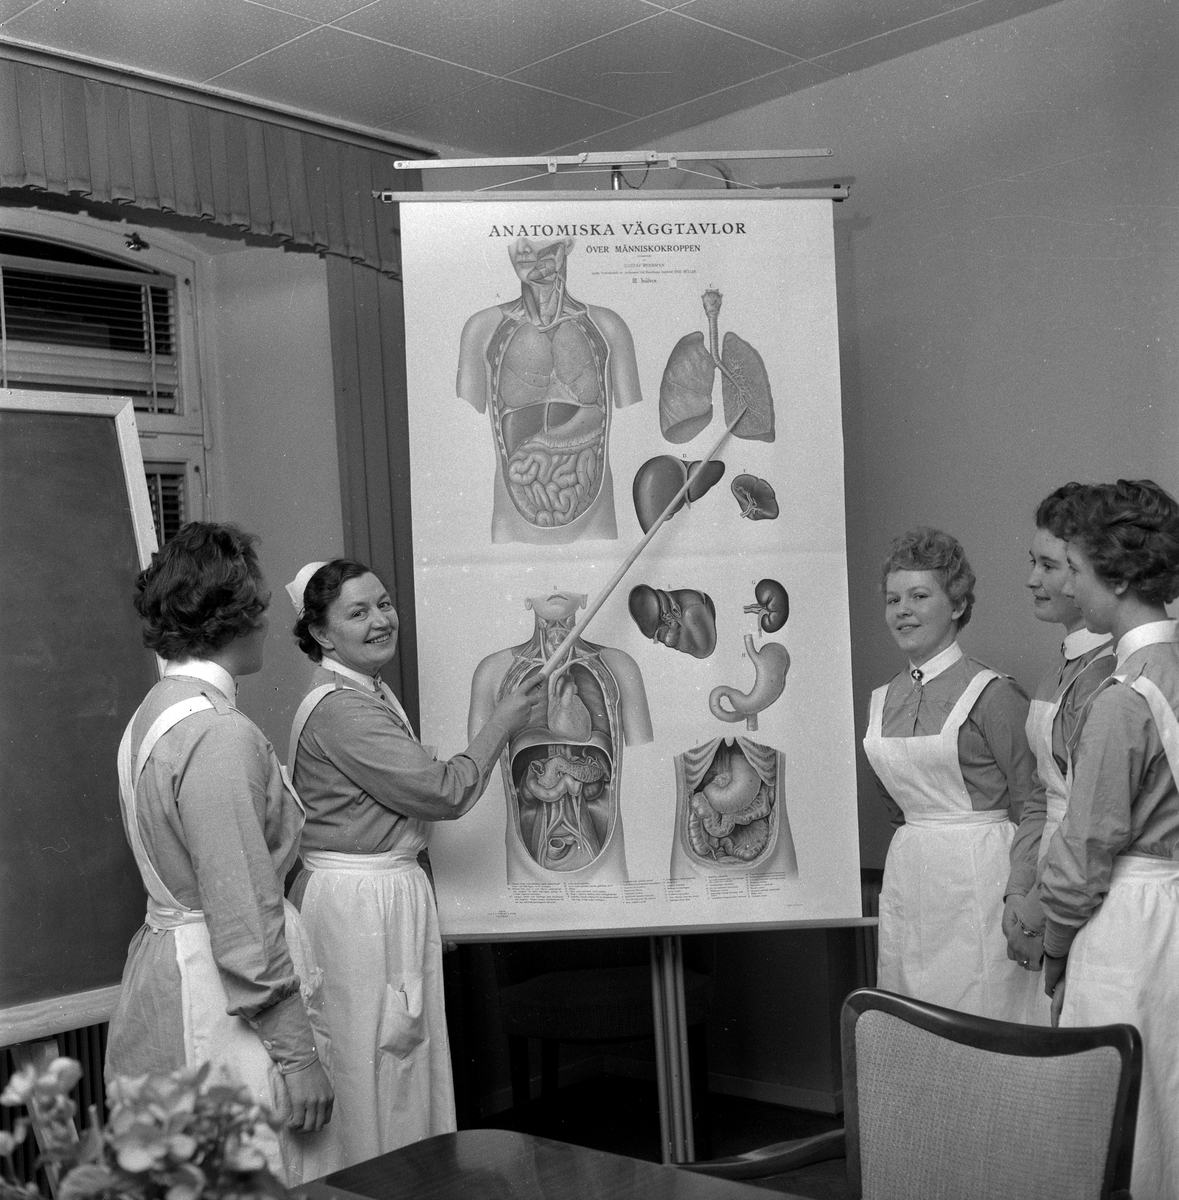 Sjukbiträden på kurs.
29 november 1958.